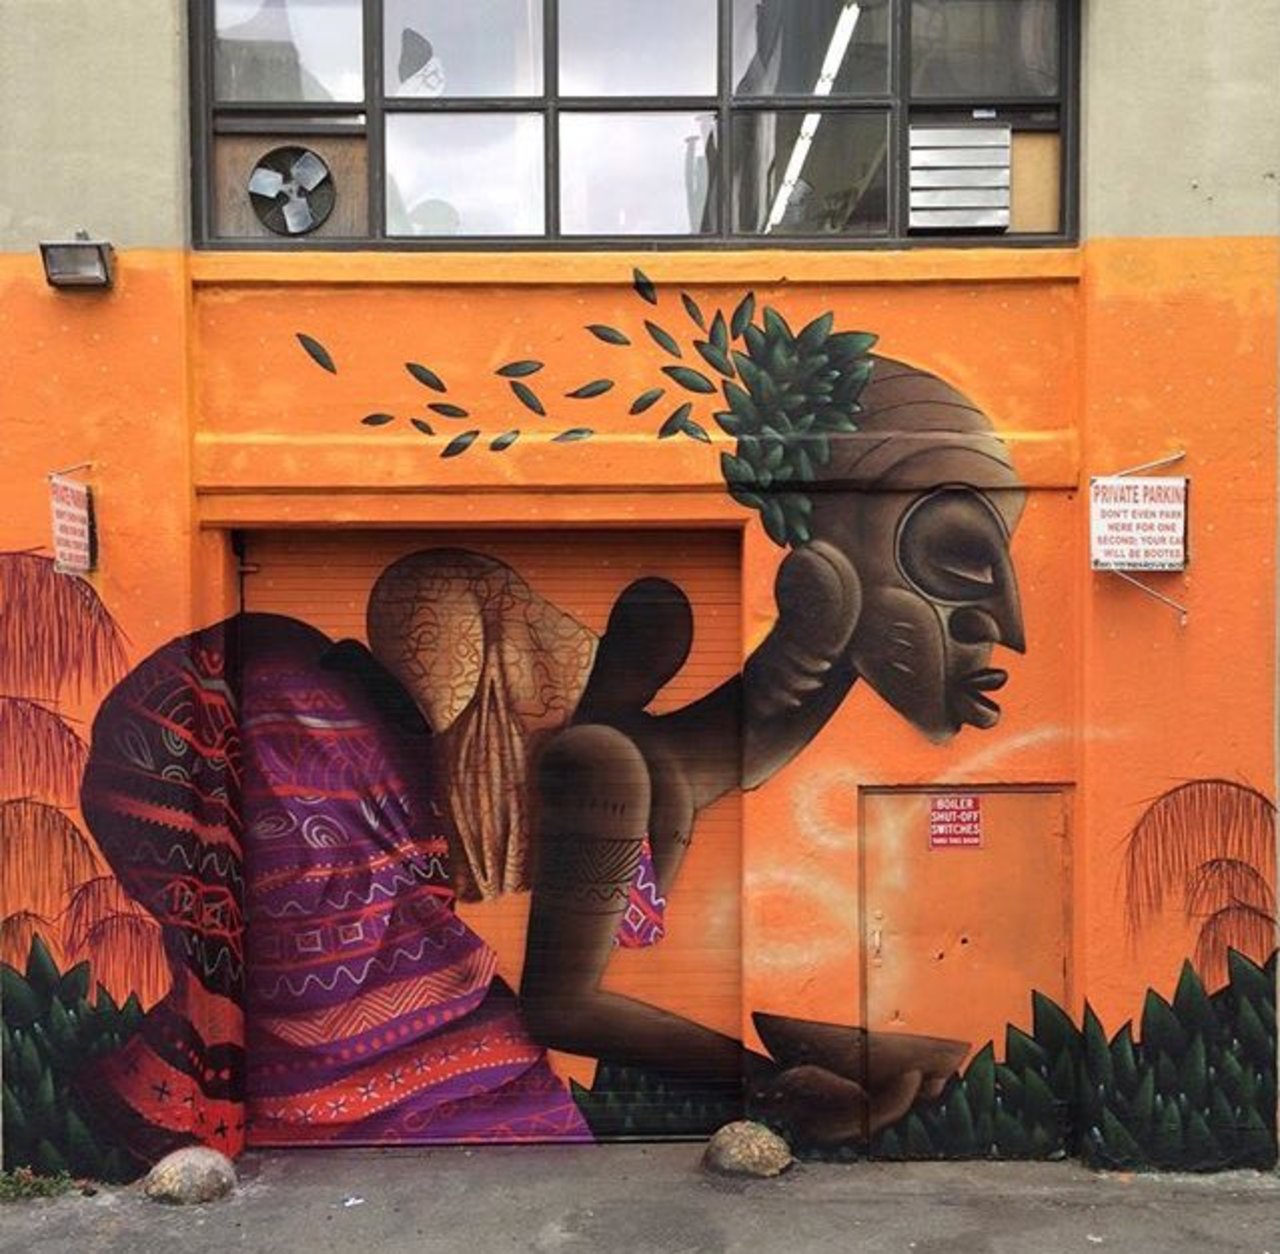 RT @belilac: New Street Art by Alexandre Keto in NYC 

#art #graffiti #mural #streetart https://t.co/5GlAopJczl